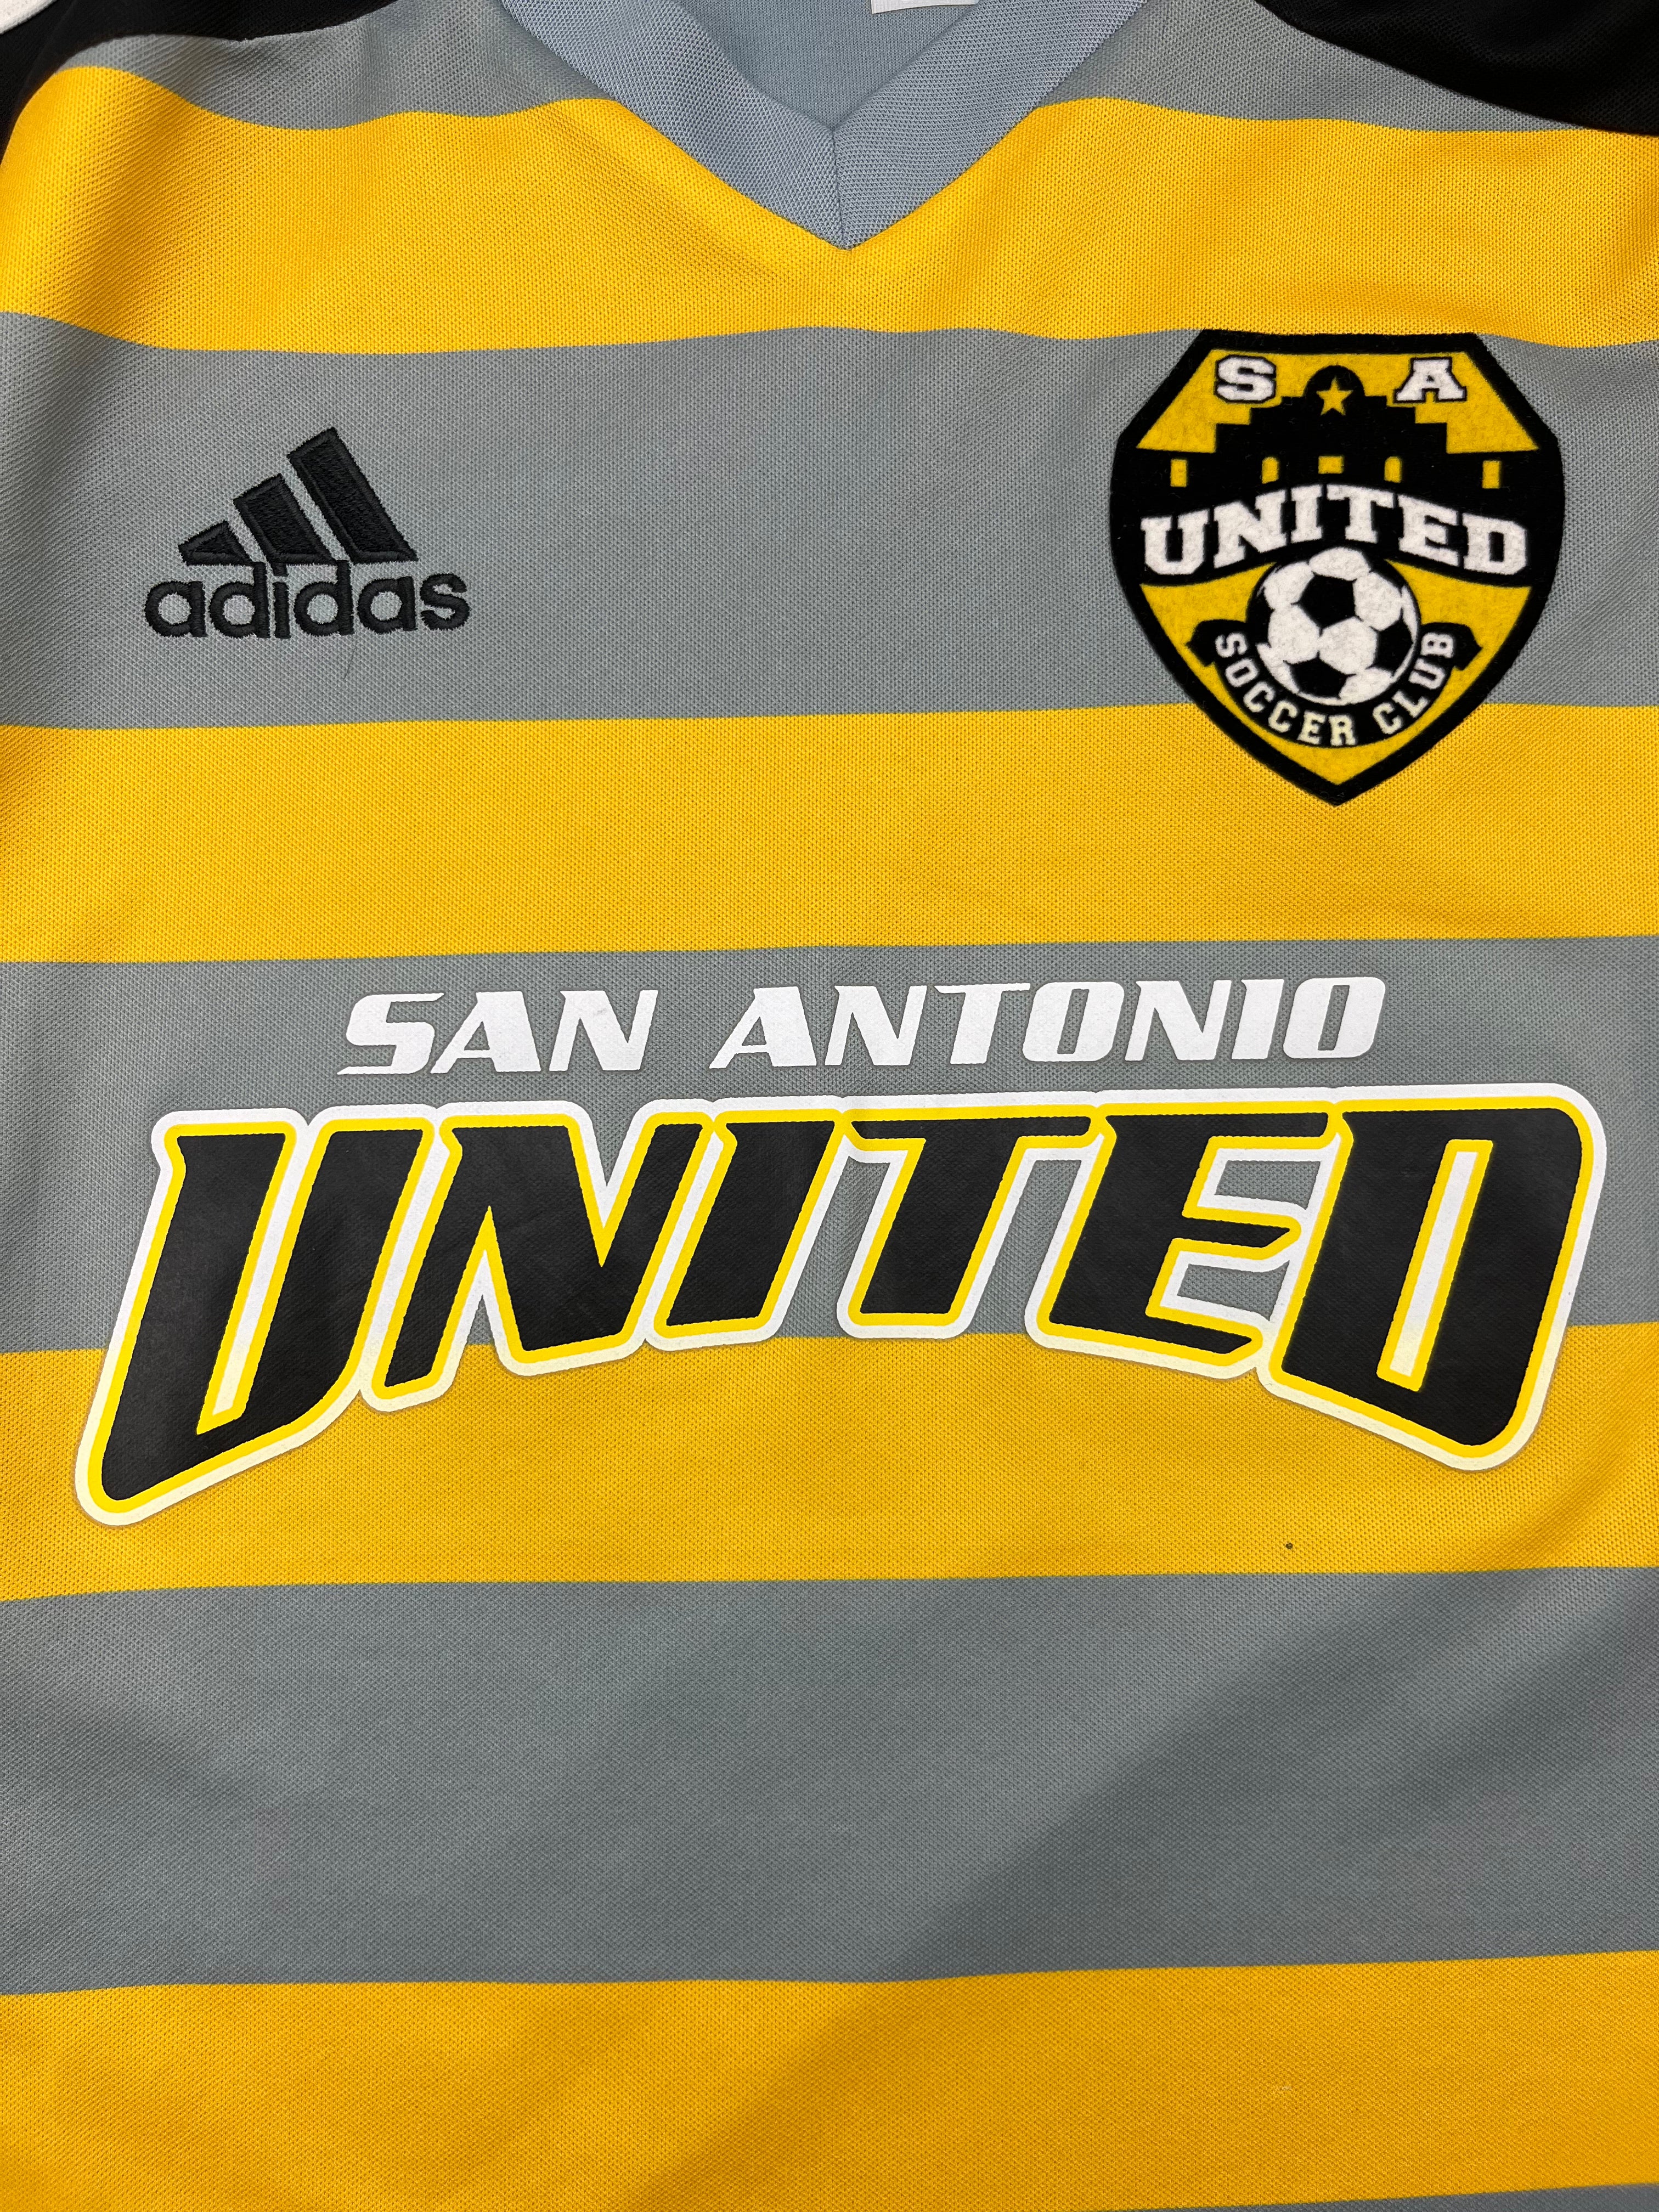 Maillot domicile San Antonio United 2013 (S) 9/10